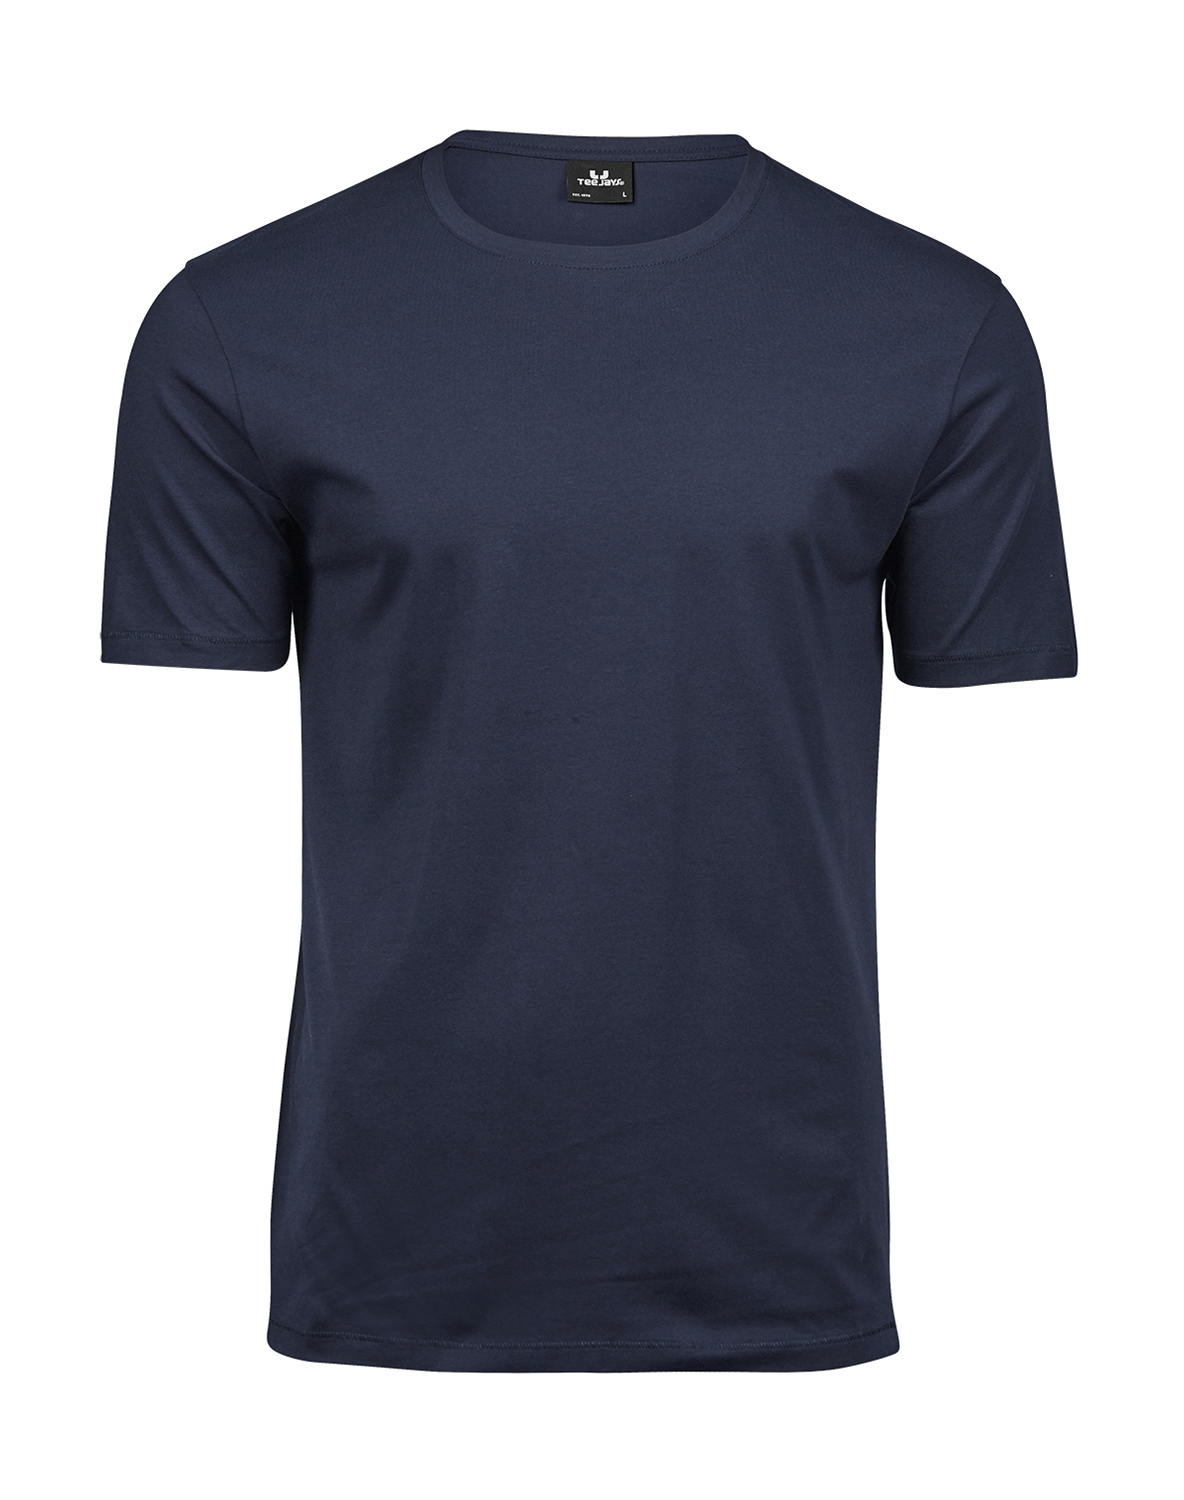 Pánské tričko Luxury Tee Velikost: M, Barva: Tmavě modrá